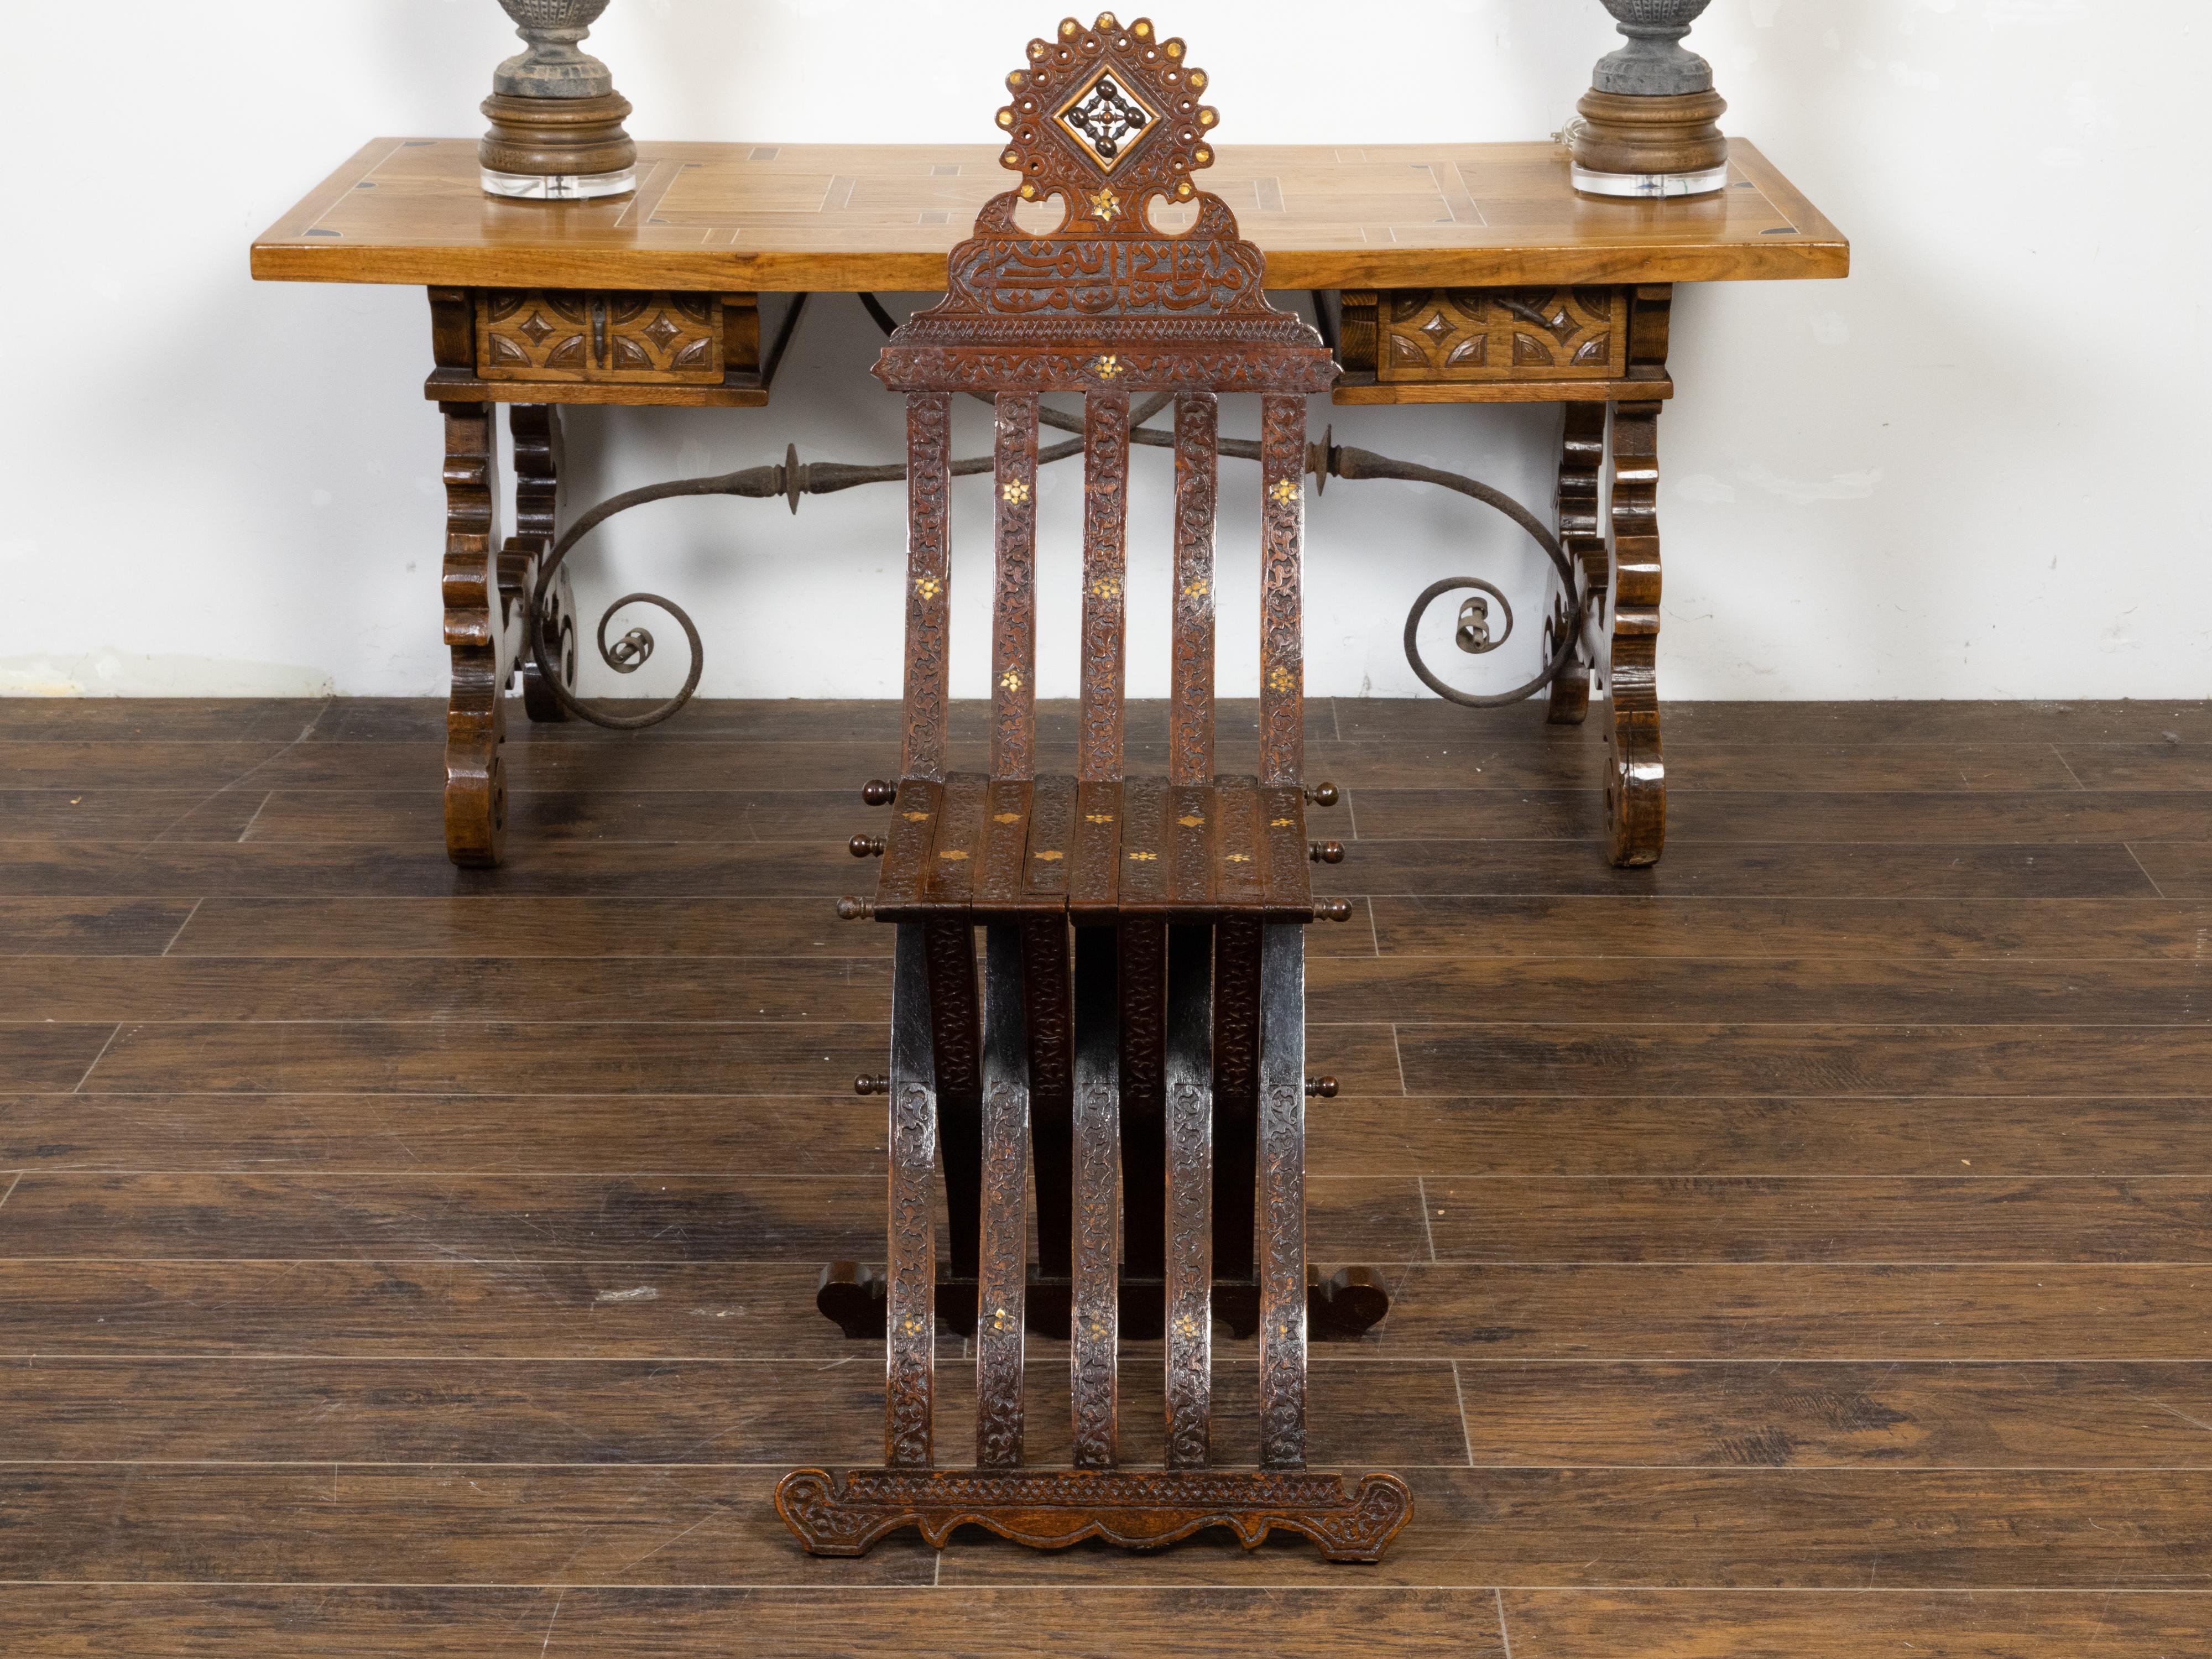 Ein marokkanischer Beistellstuhl im maurischen Stil aus dem frühen 20. Jahrhundert mit reich geschnitztem Dekor, Perlmuttintarsien, arabischer Kalligraphie und X-Fuß. Dieser Beistellstuhl im maurischen Stil, der um die Jahrhundertwende in Marokko